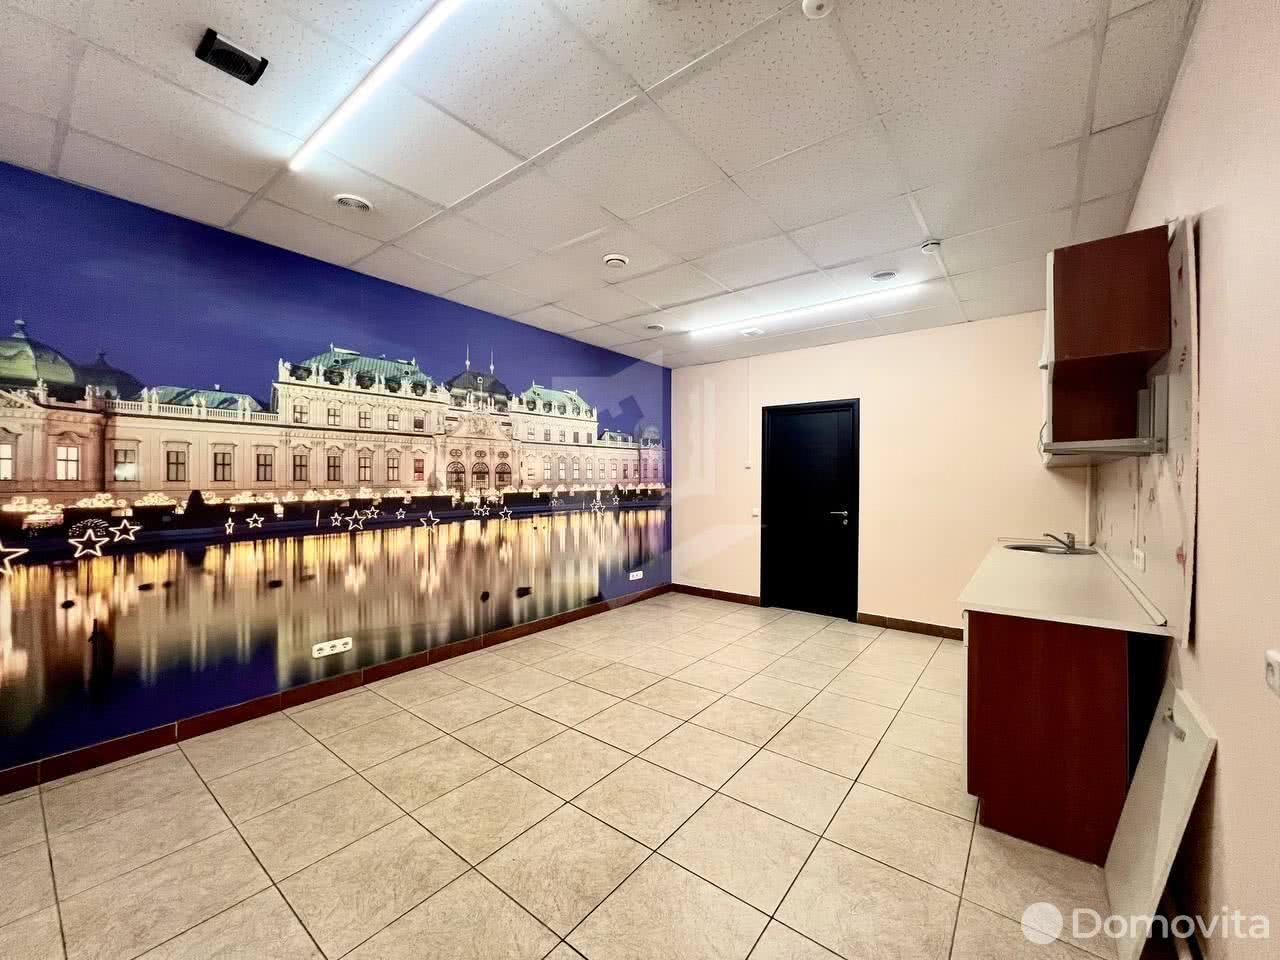 Снять офис на ул. Могилевская, д. 2/2 в Минске, 1272EUR, код 11812 - фото 3